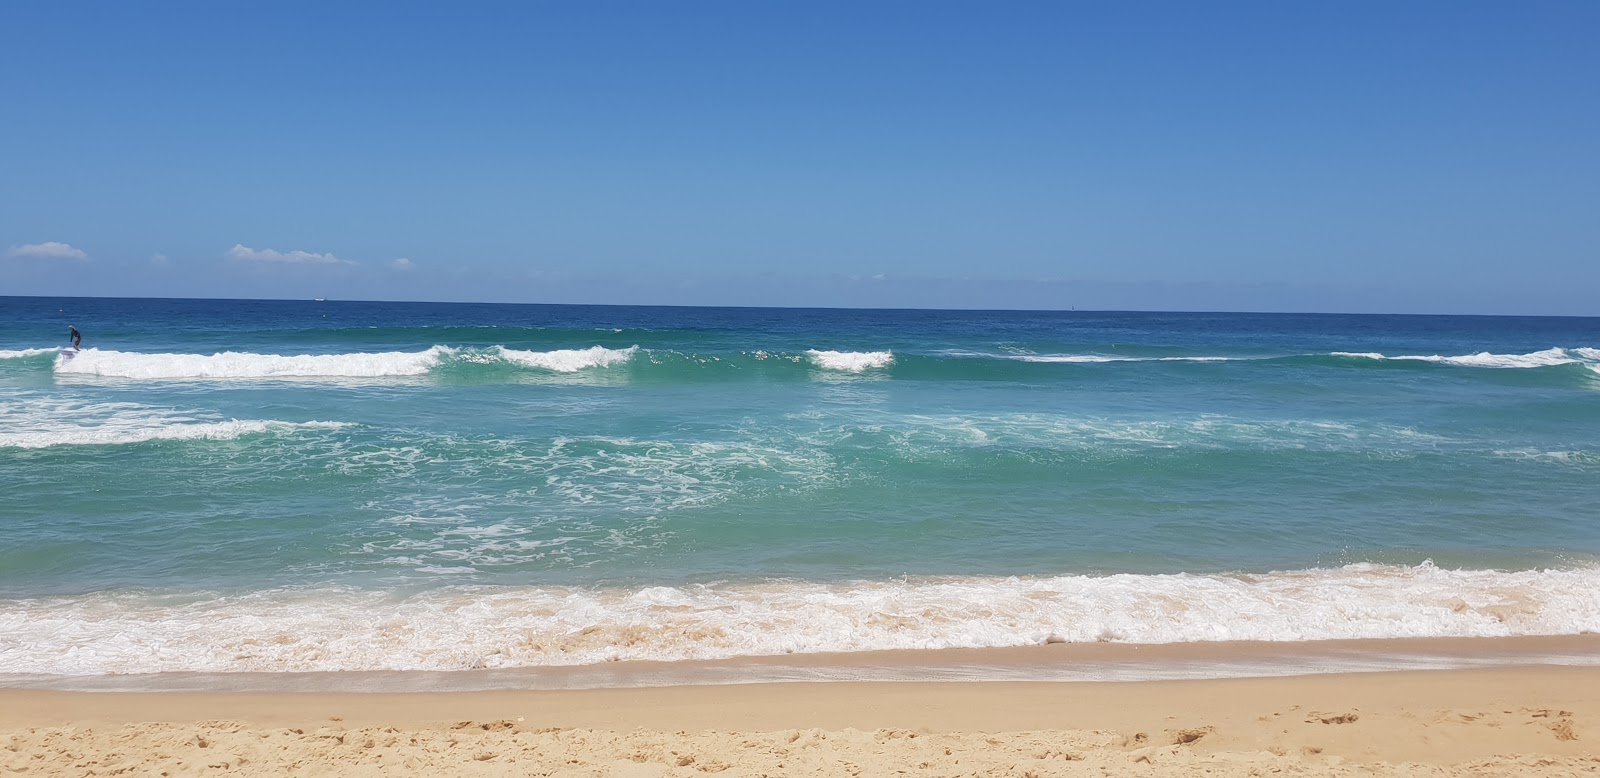 Photo de Kawana Beach - endroit populaire parmi les connaisseurs de la détente